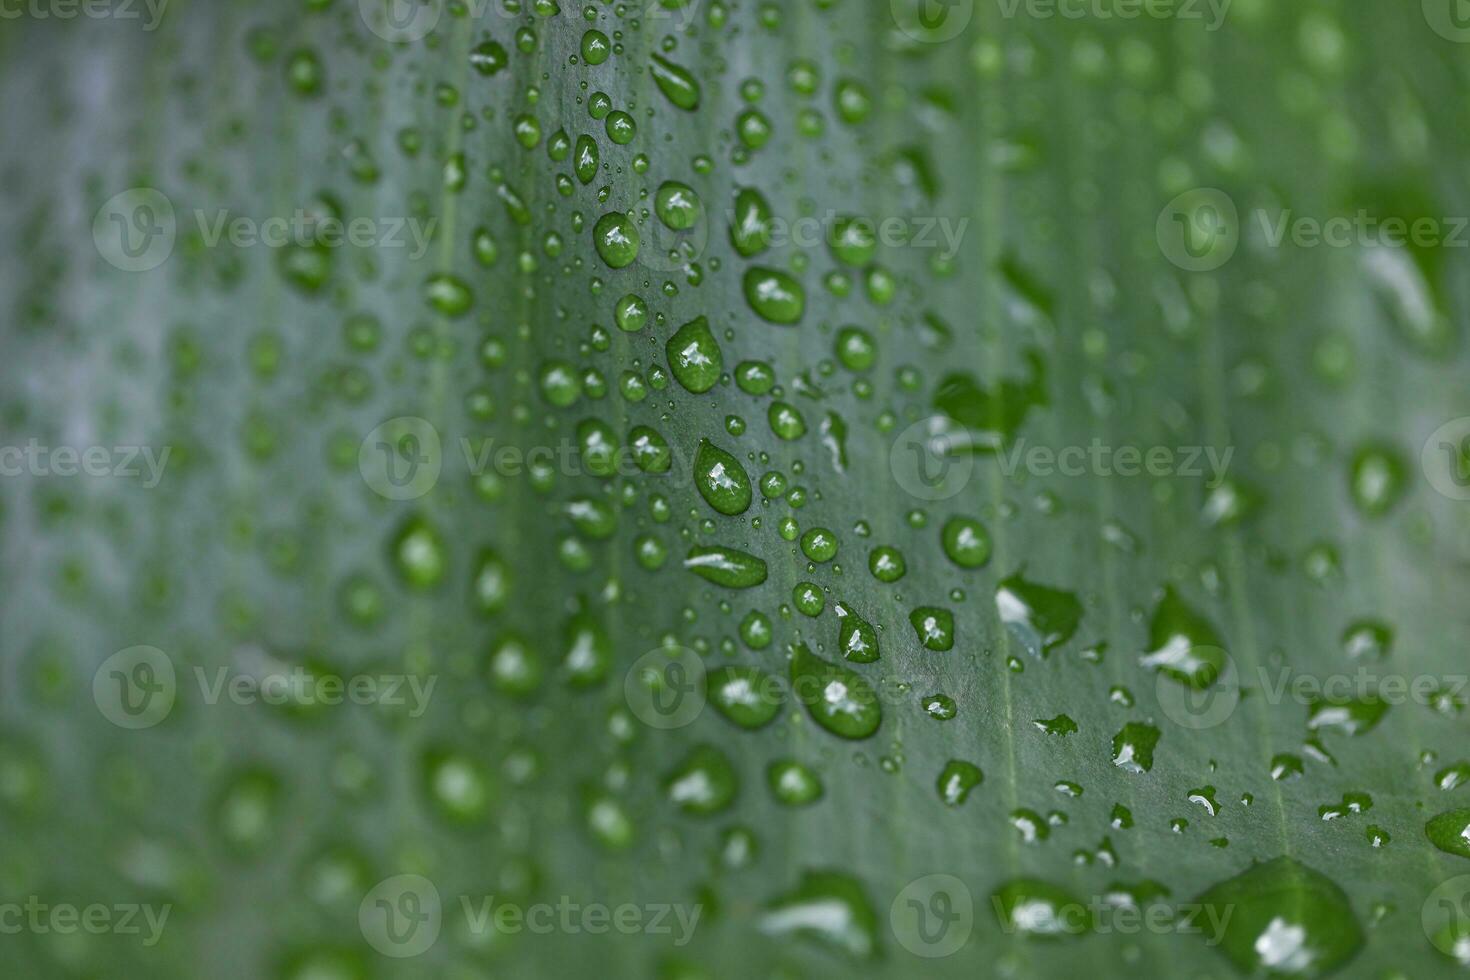 Grün tropisch Blatt bedeckt im Regentropfen, Heilige Lucia, Soufrière, Makro Schuss foto